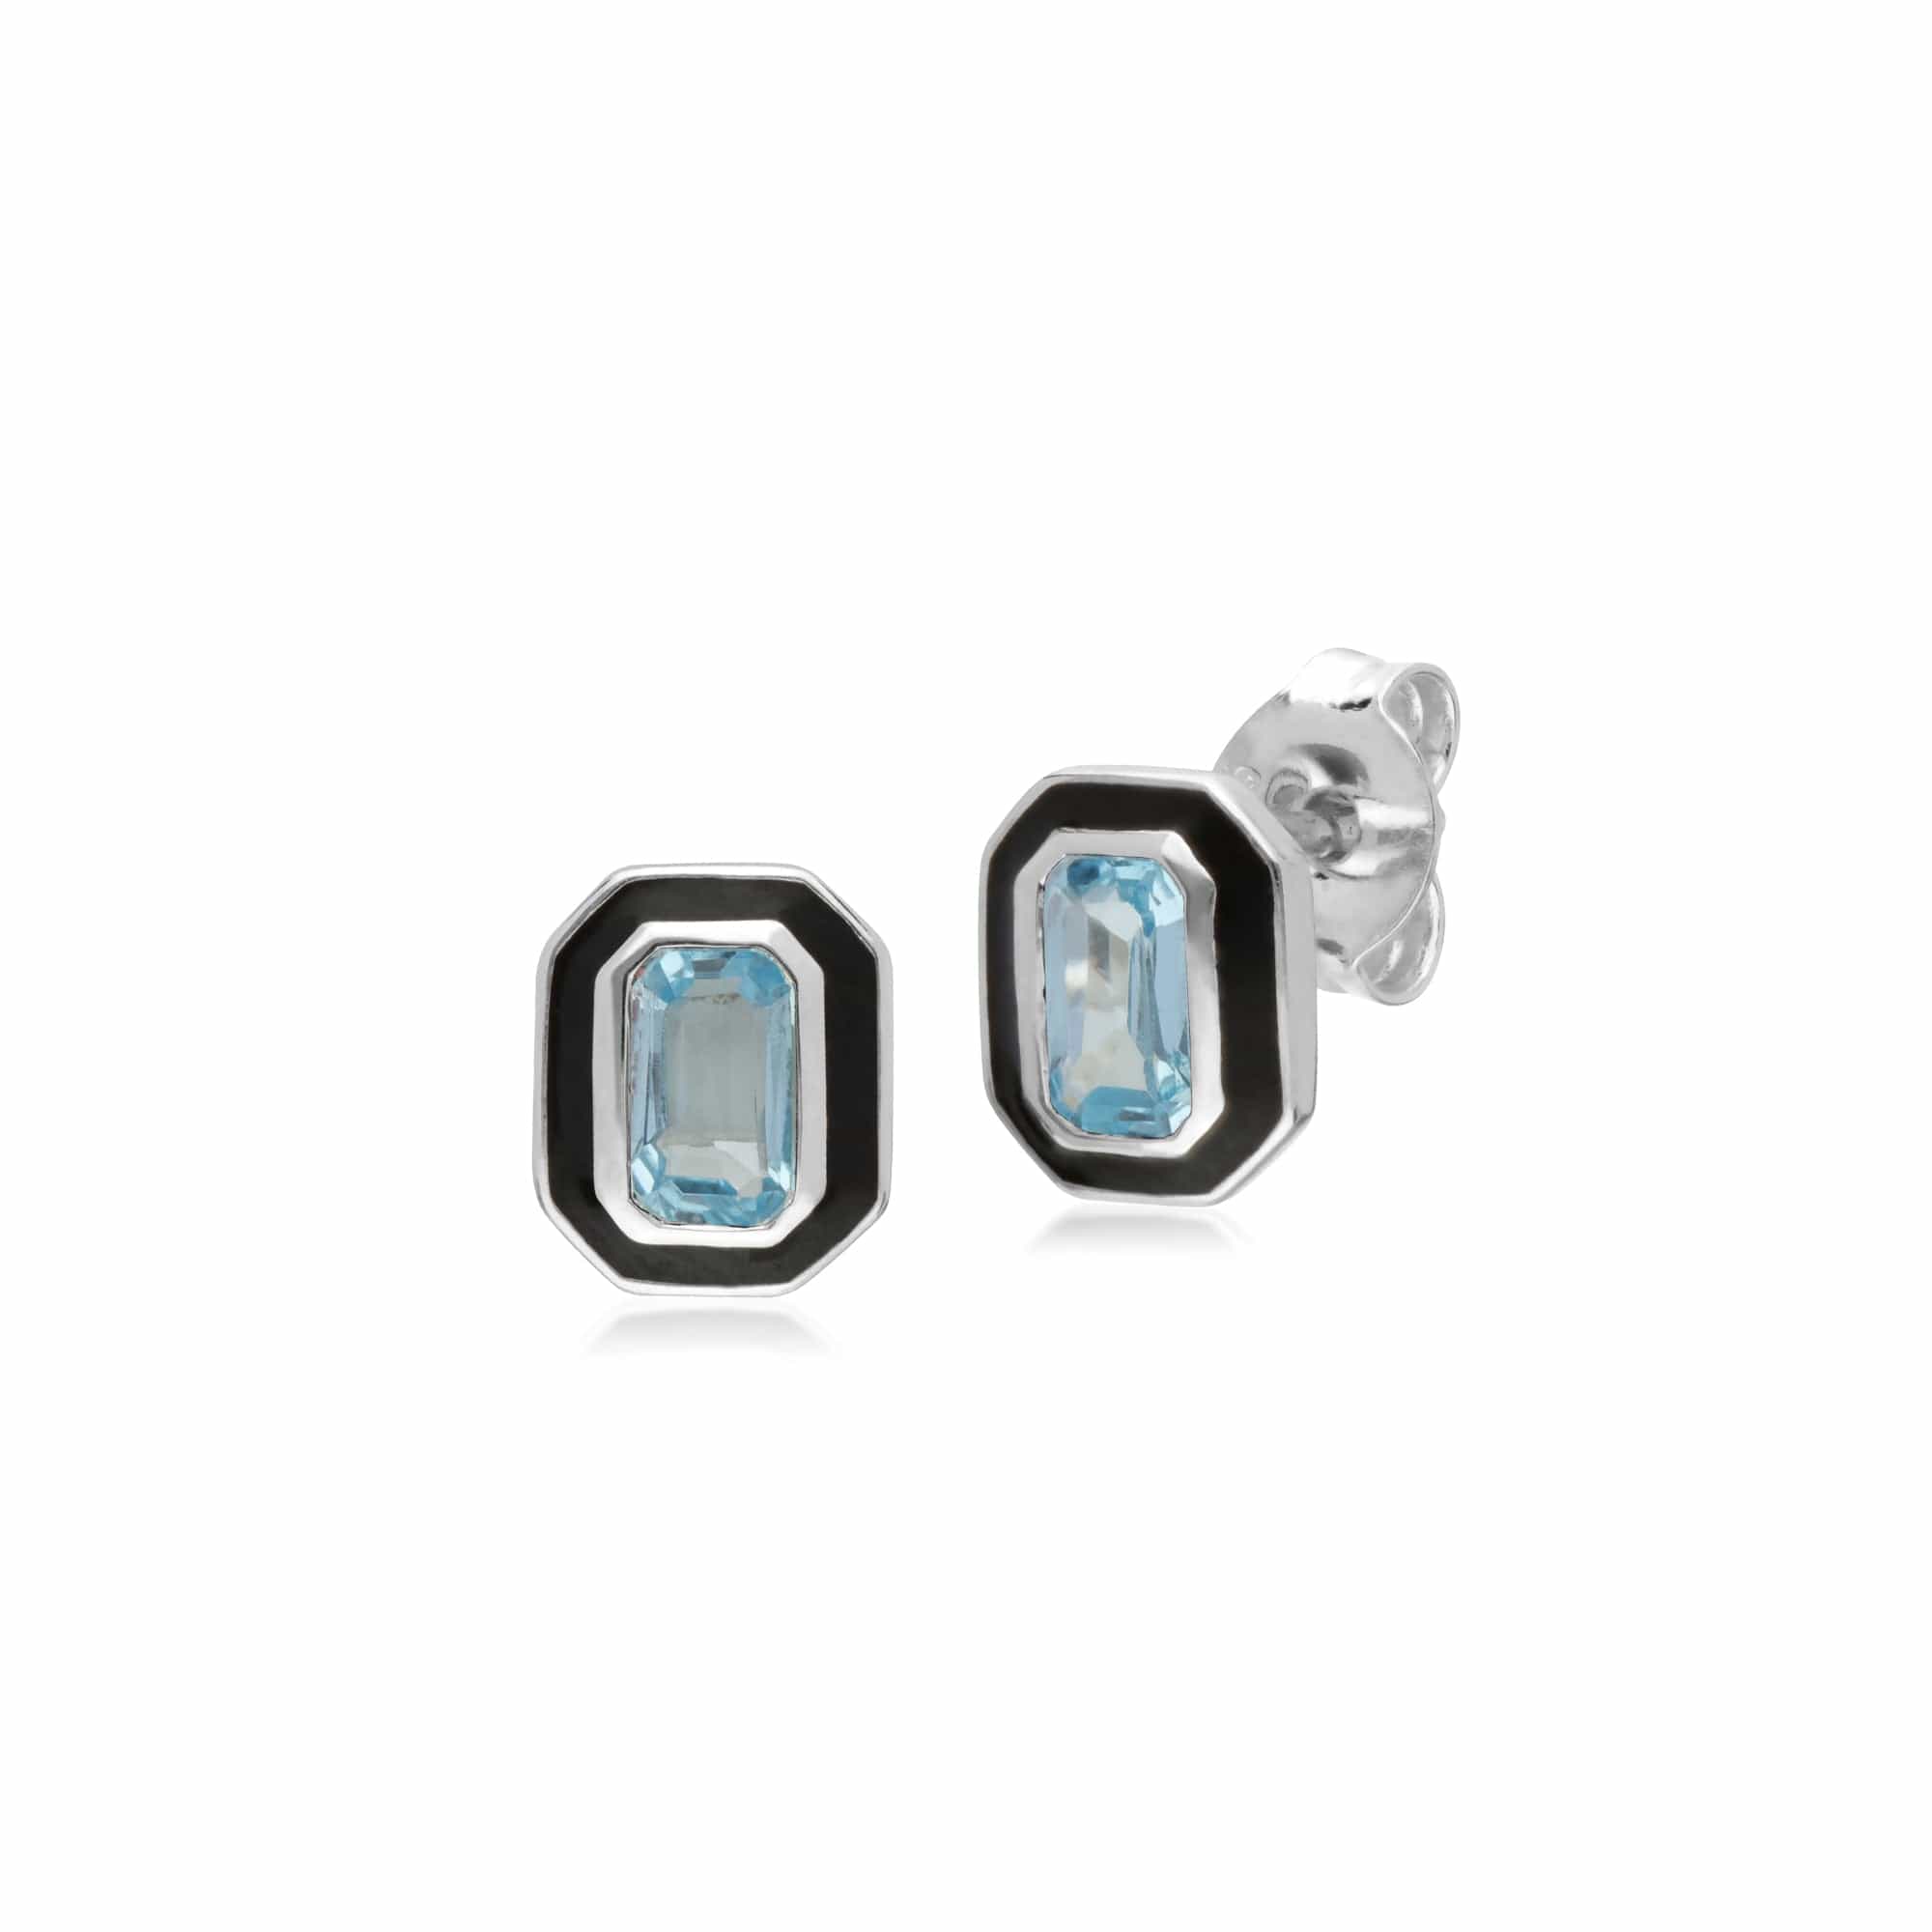 241E121002925 Art Deco Style Octagon Blue Topaz & Black Enamel Stud Earrings In Sterling Silver 1